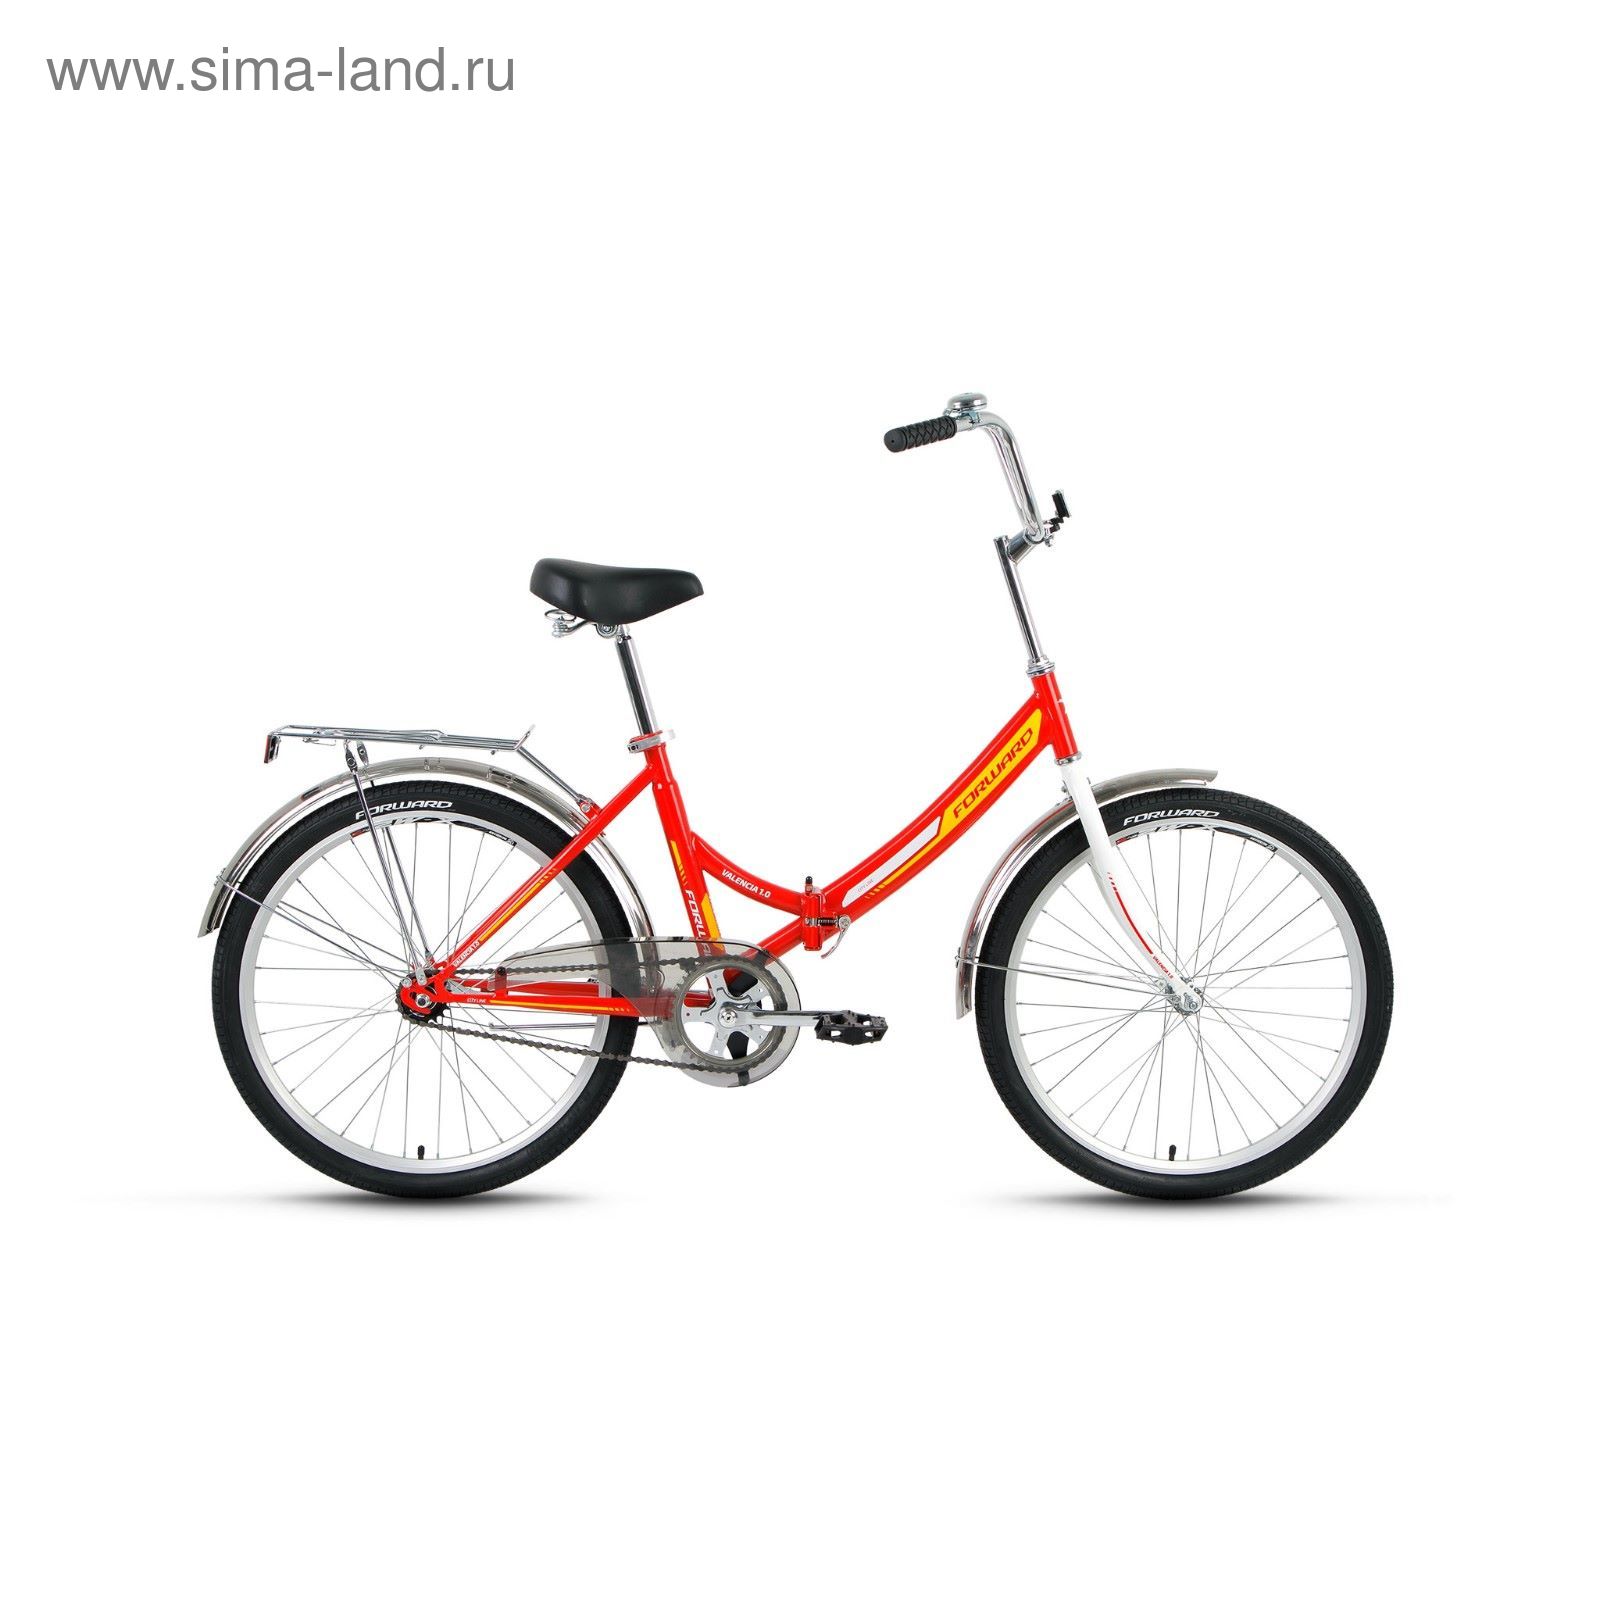 Велосипед 24" Forward Valencia 1.0, 2017, цвет красный, размер 16"